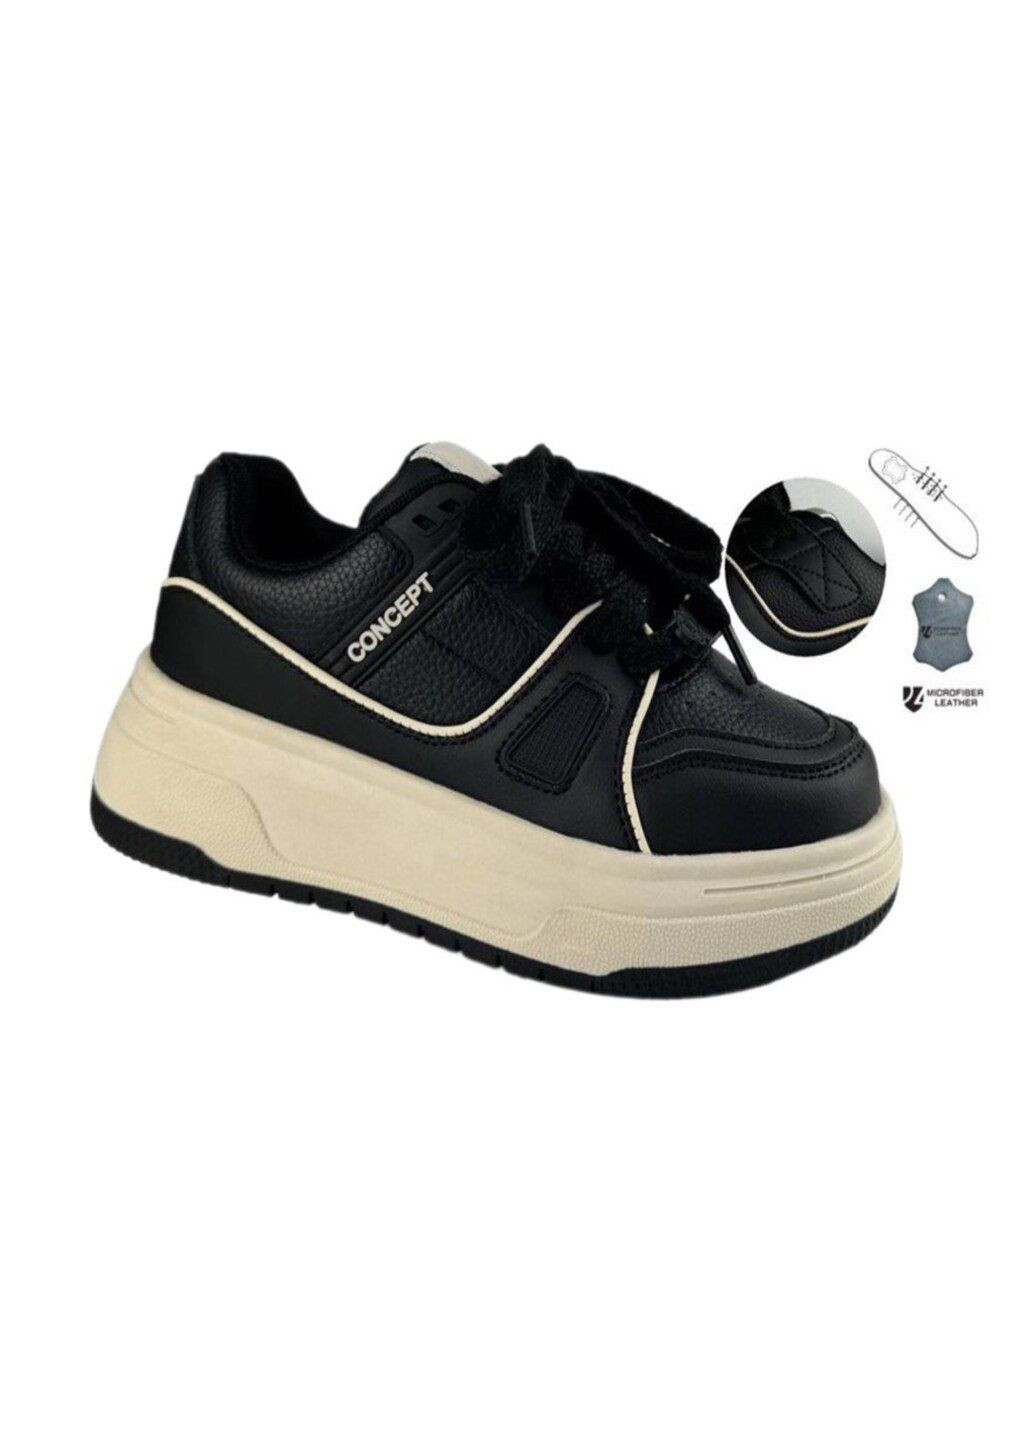 Черные демисезонные демисезонные кроссовки для девочки. Jong Golf